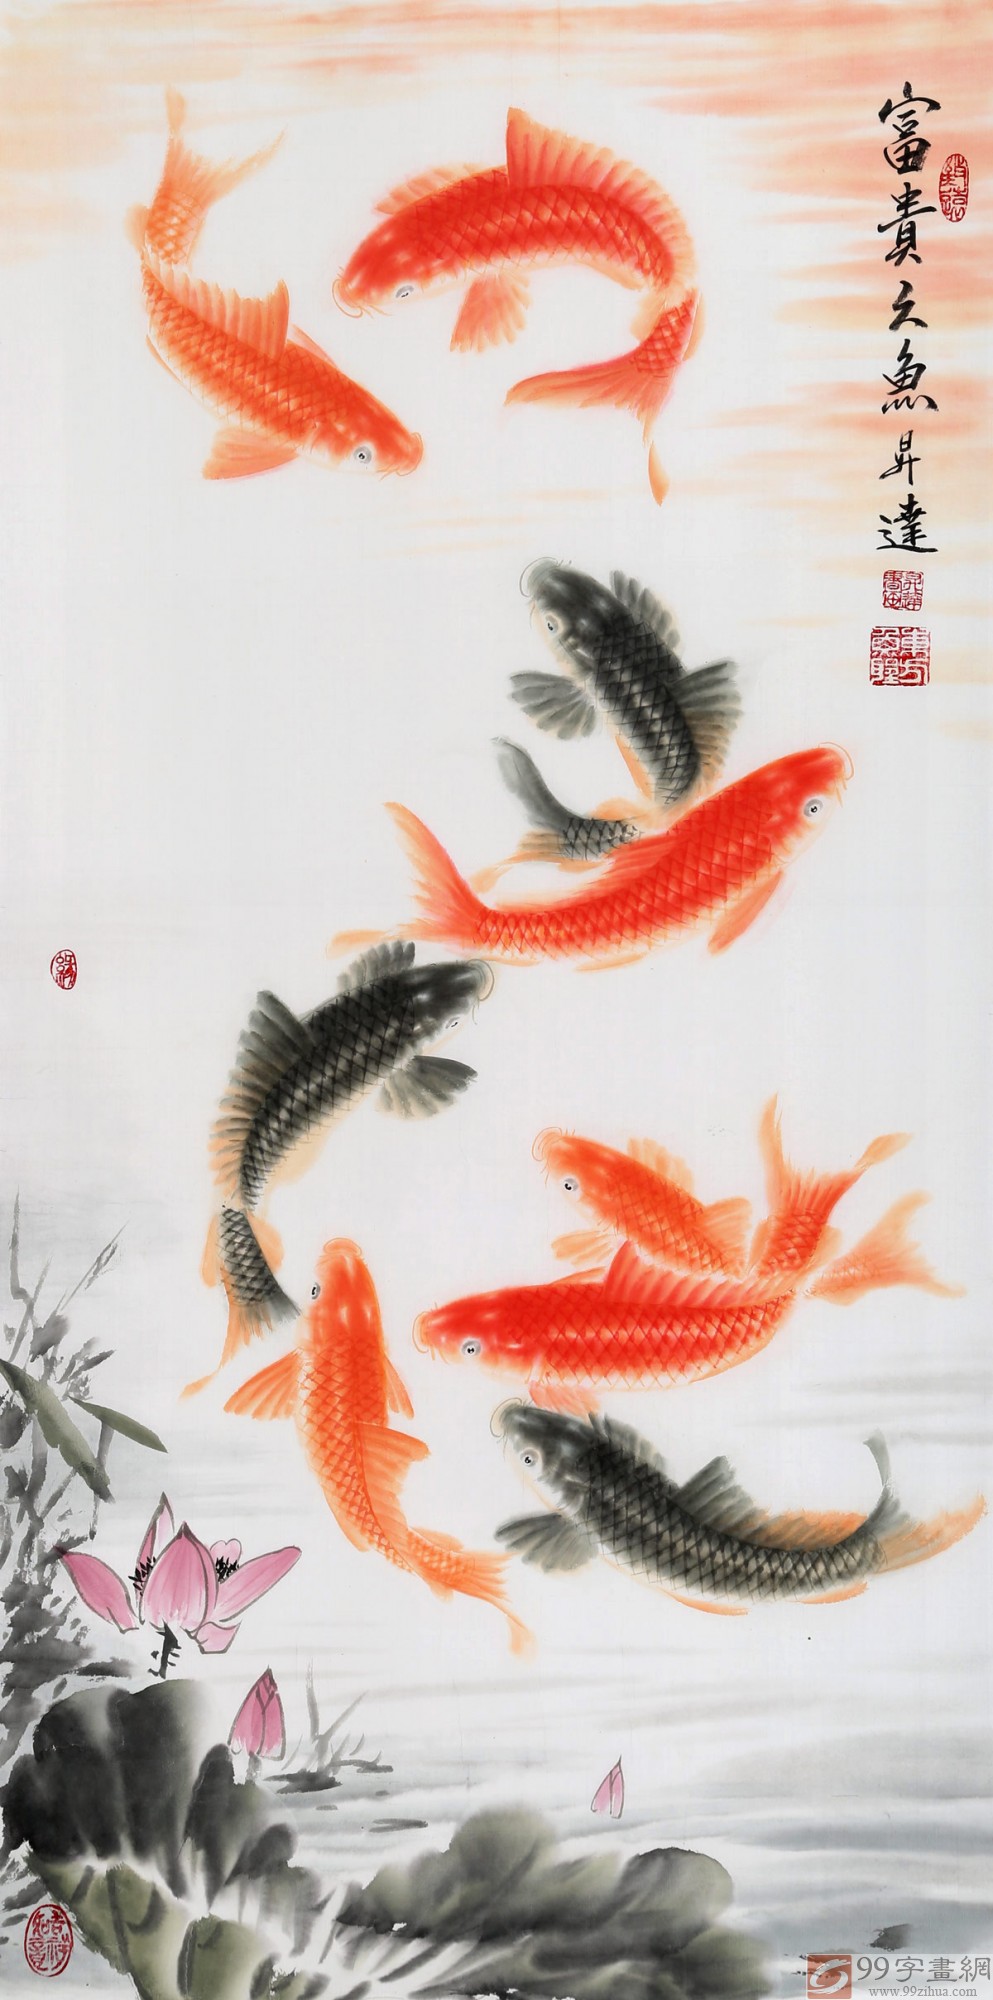 中国画院周升达 三尺《富贵久鱼》 - 九鱼图